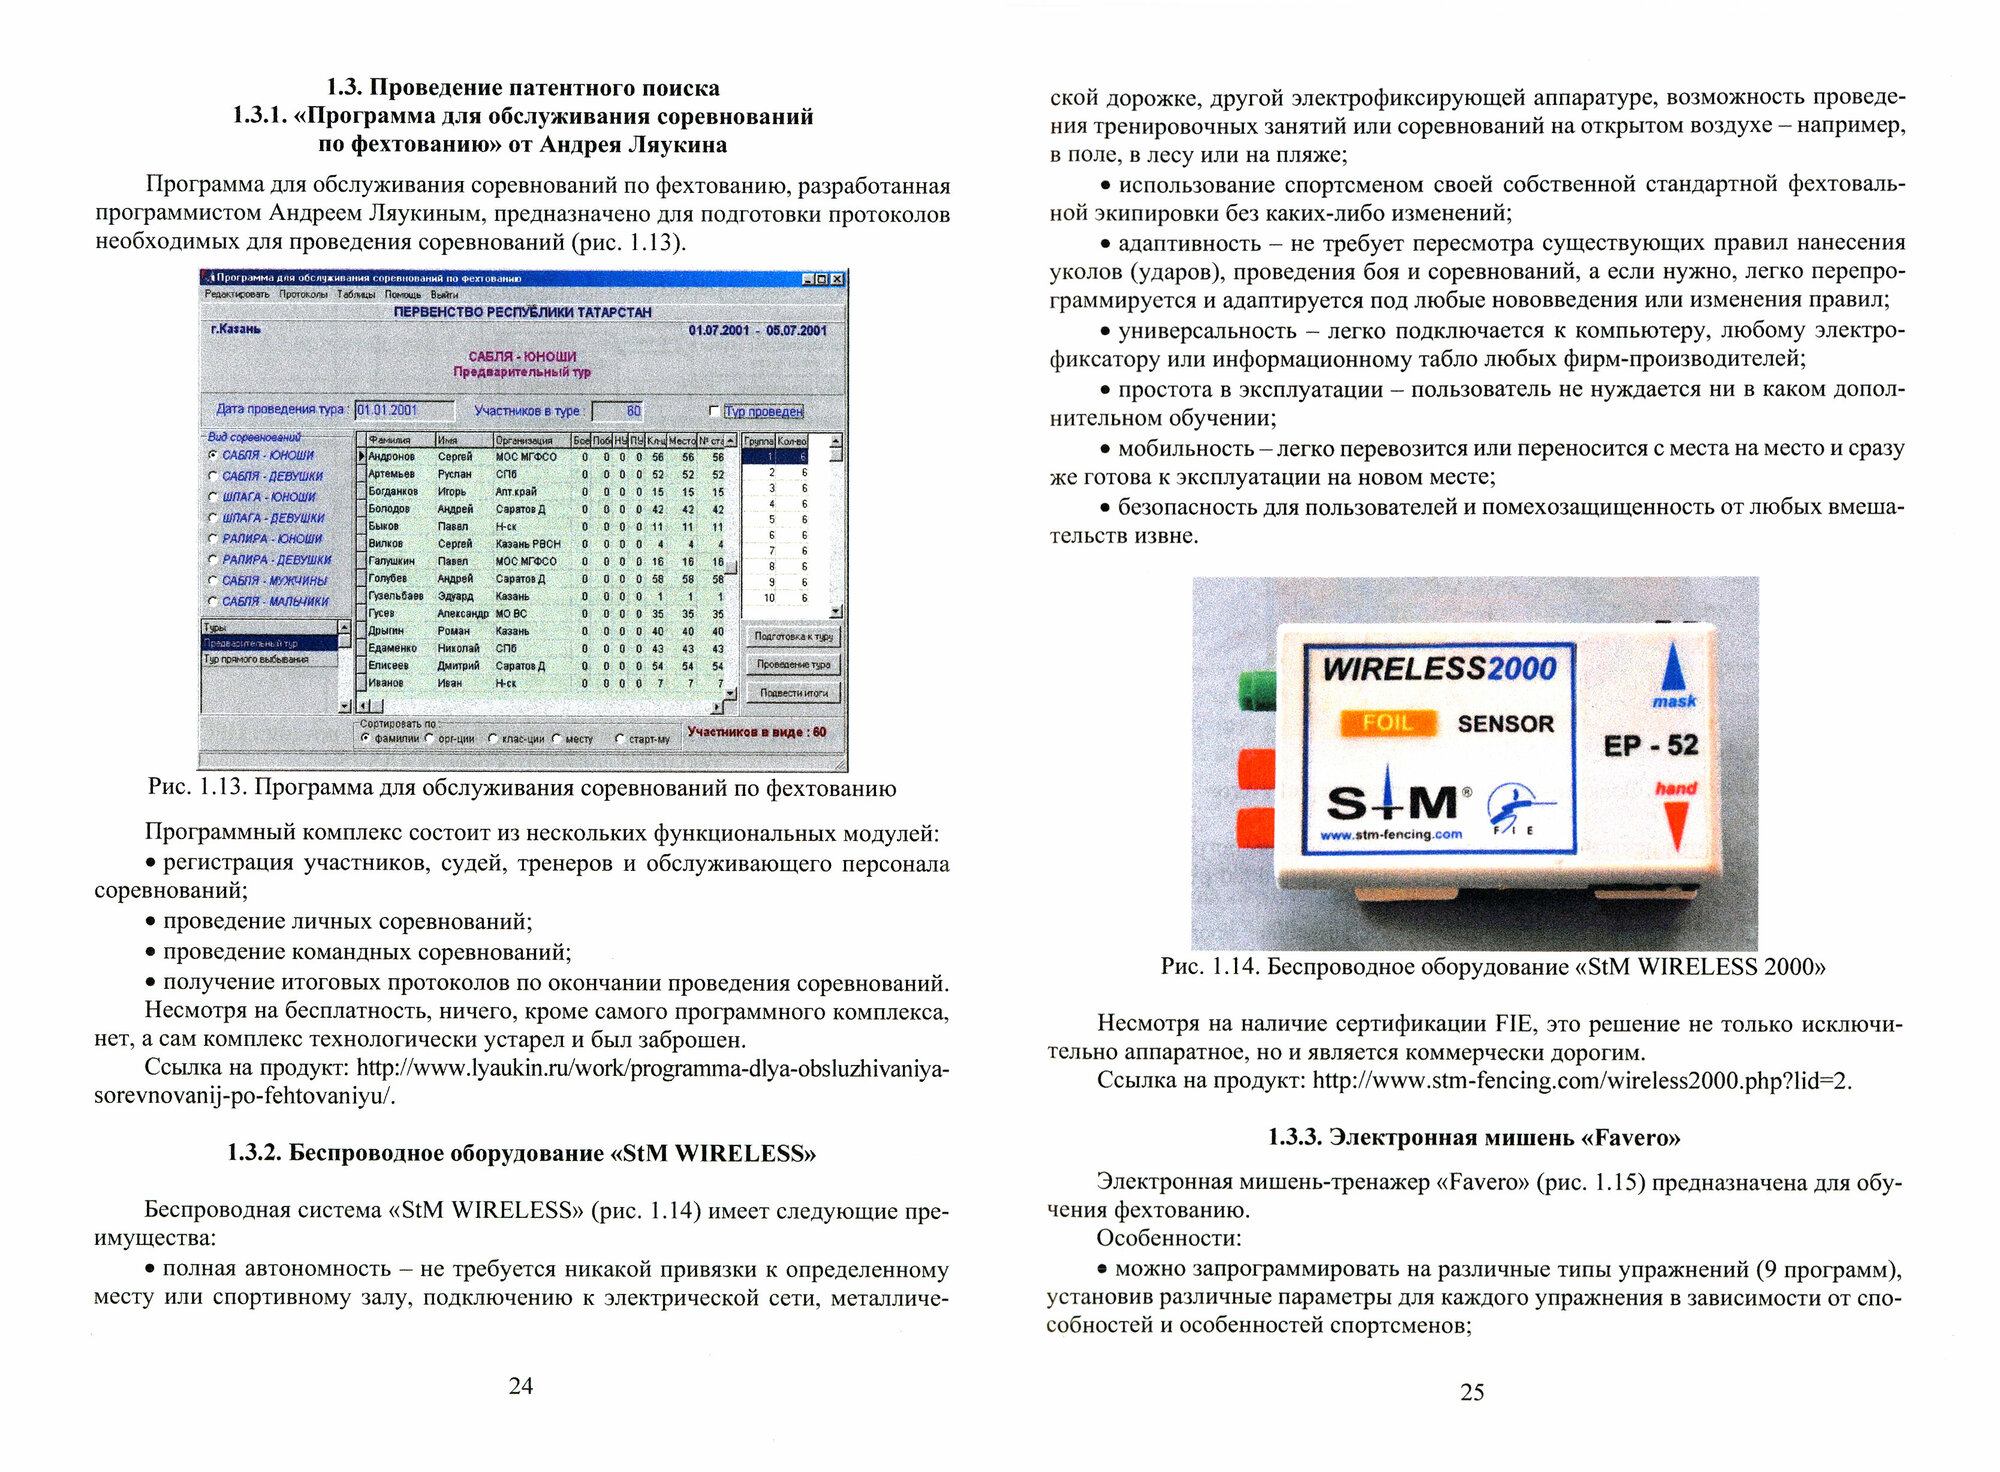 Разработка интеллектуальных систем для обработки сигналов с датчиков давления - фото №2